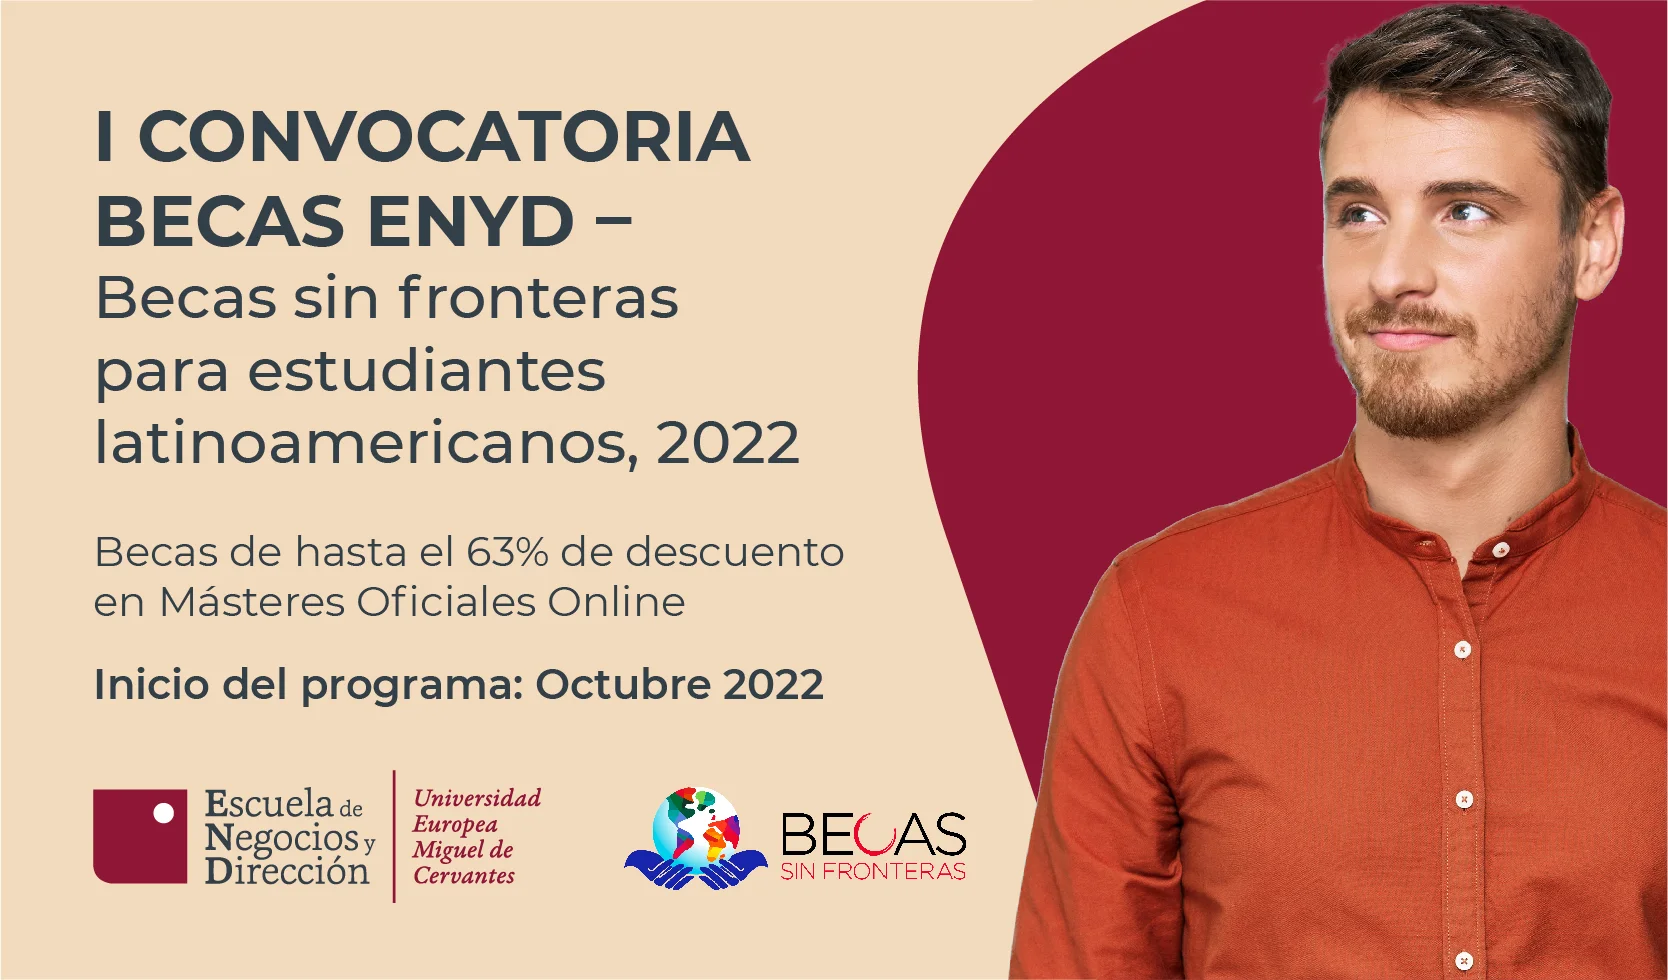 Becas ENYD - Becas sin fronteras para estudiantes latinoamericanos, 2022